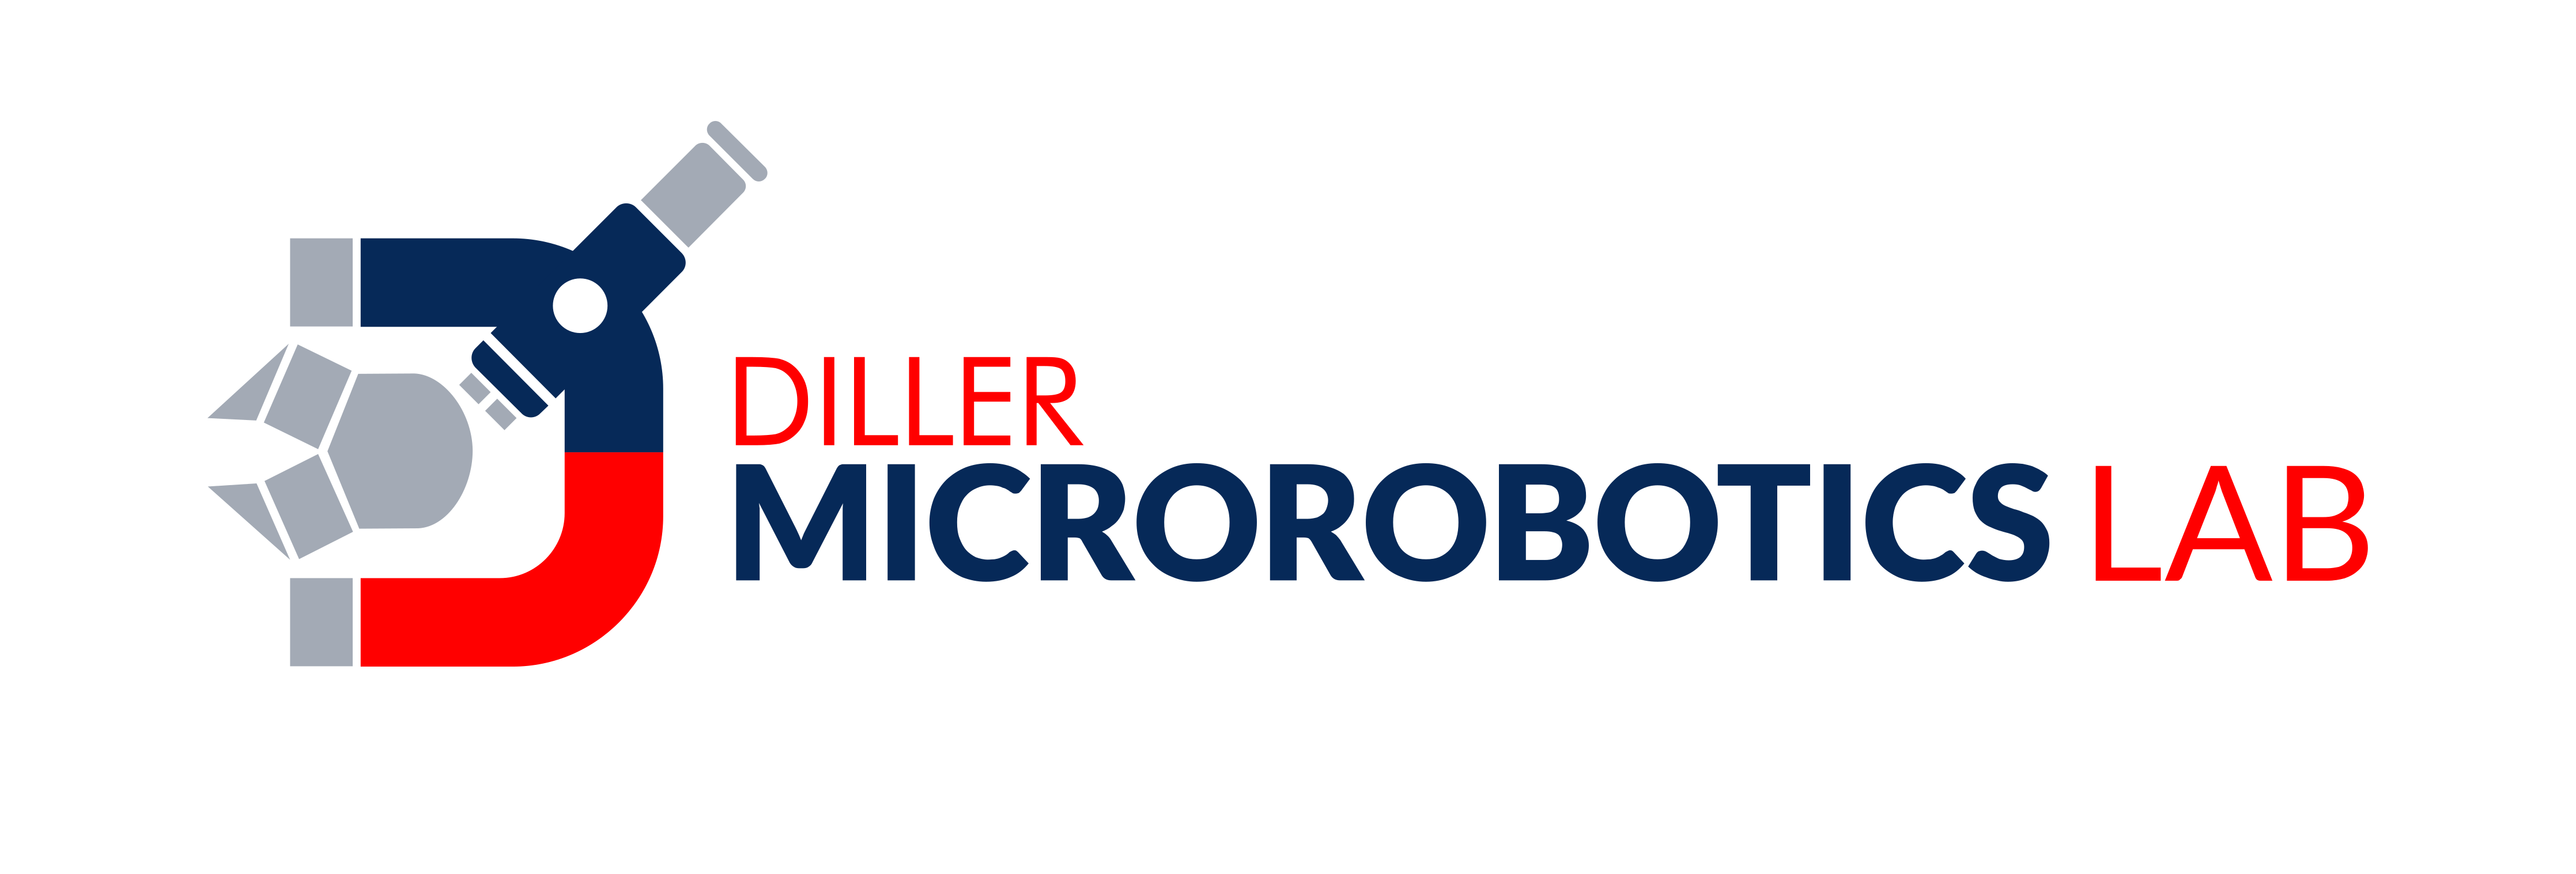 Microrobotics Lab